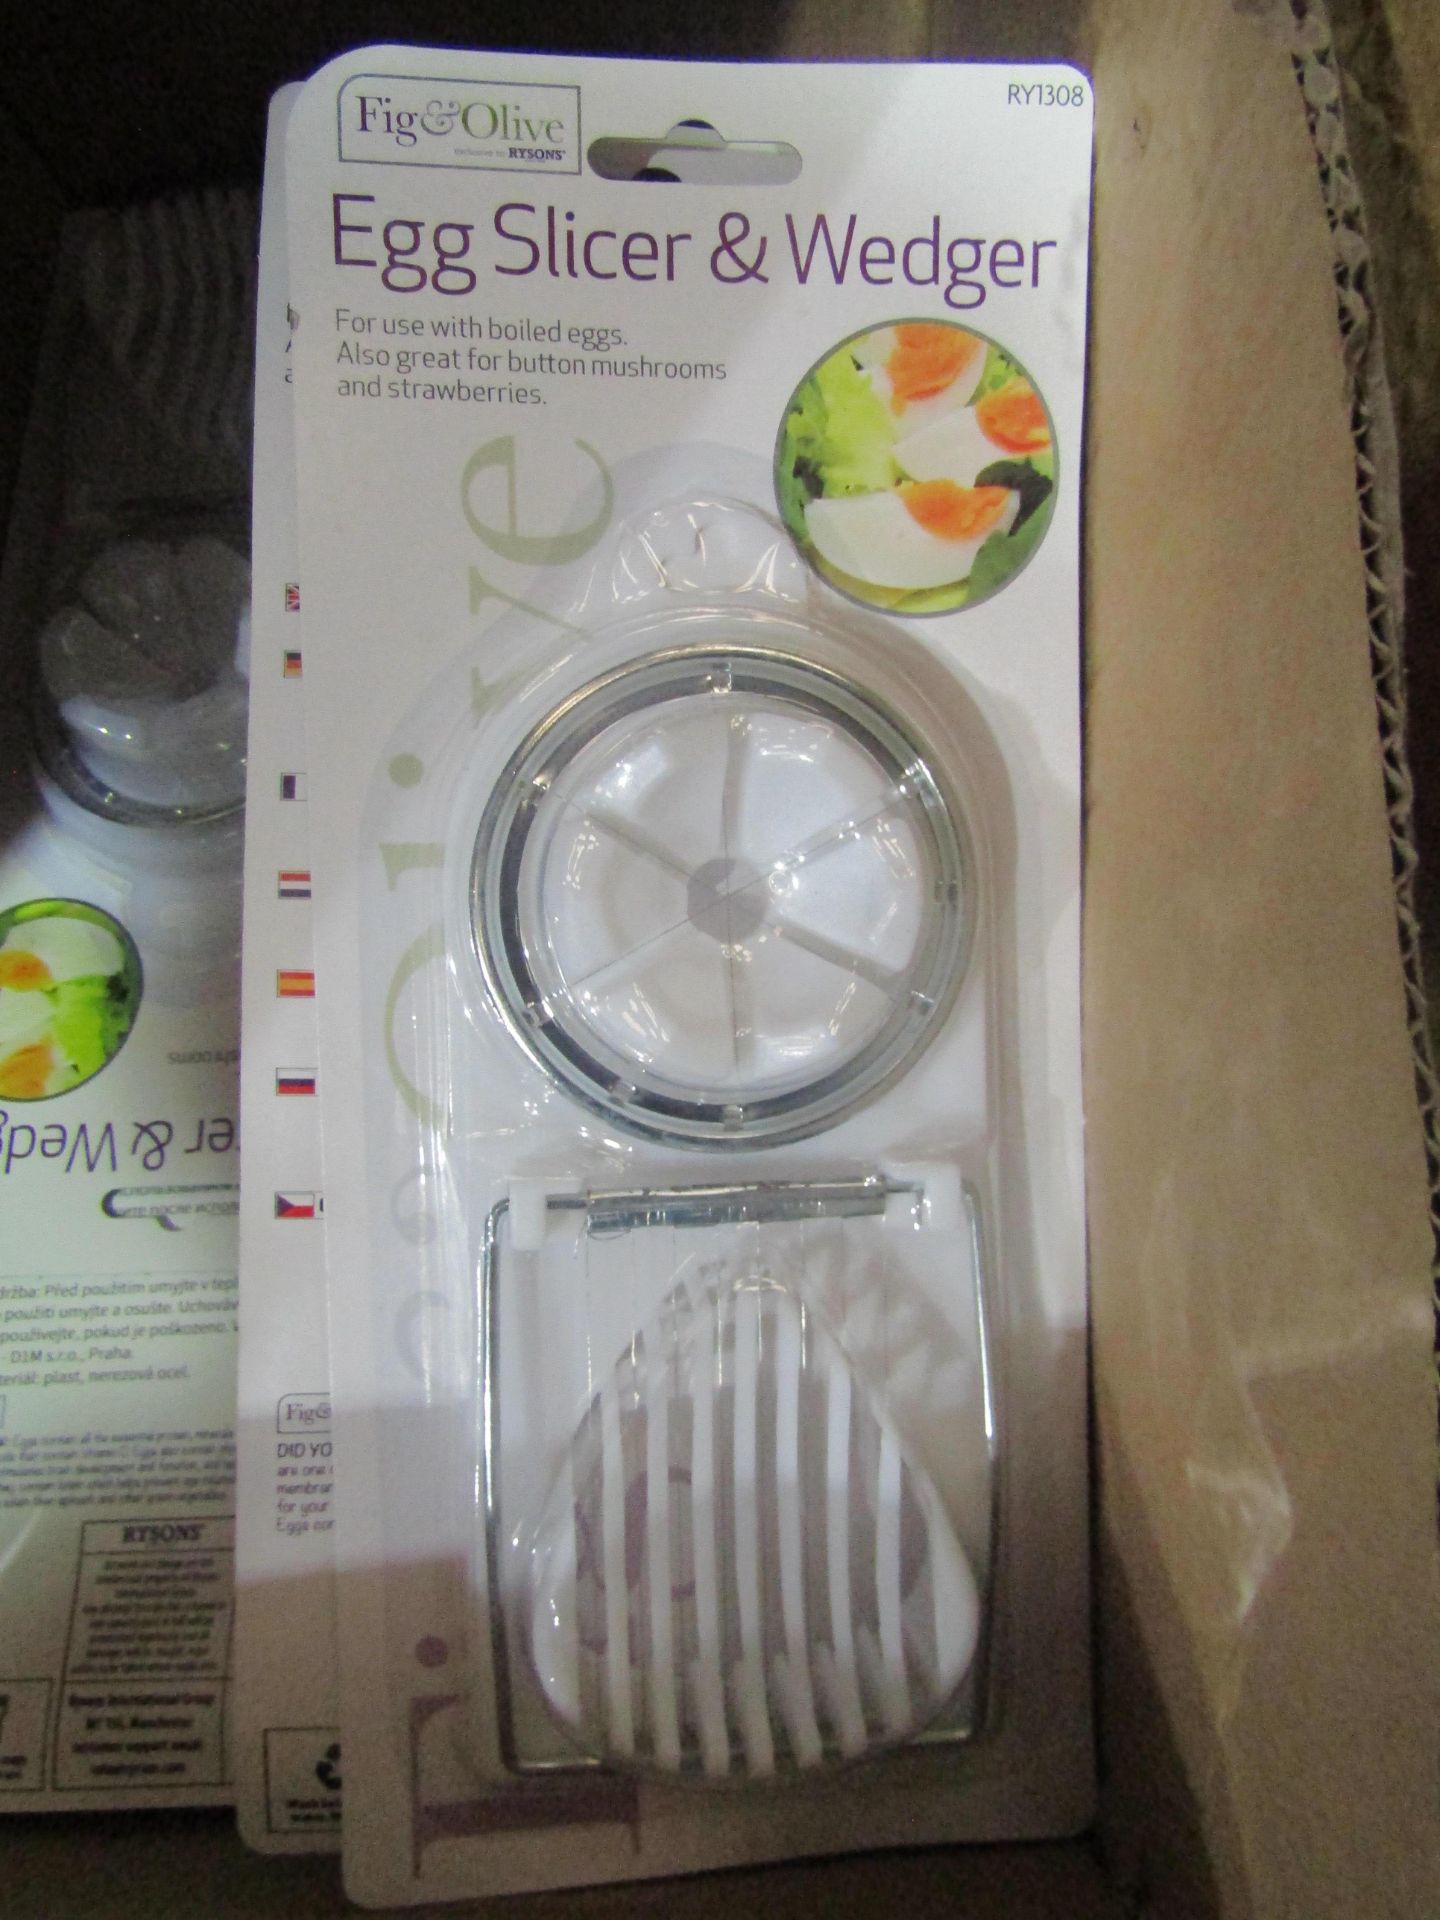 12 x Fig & Olive Egg Slicer & wdger packaged unused